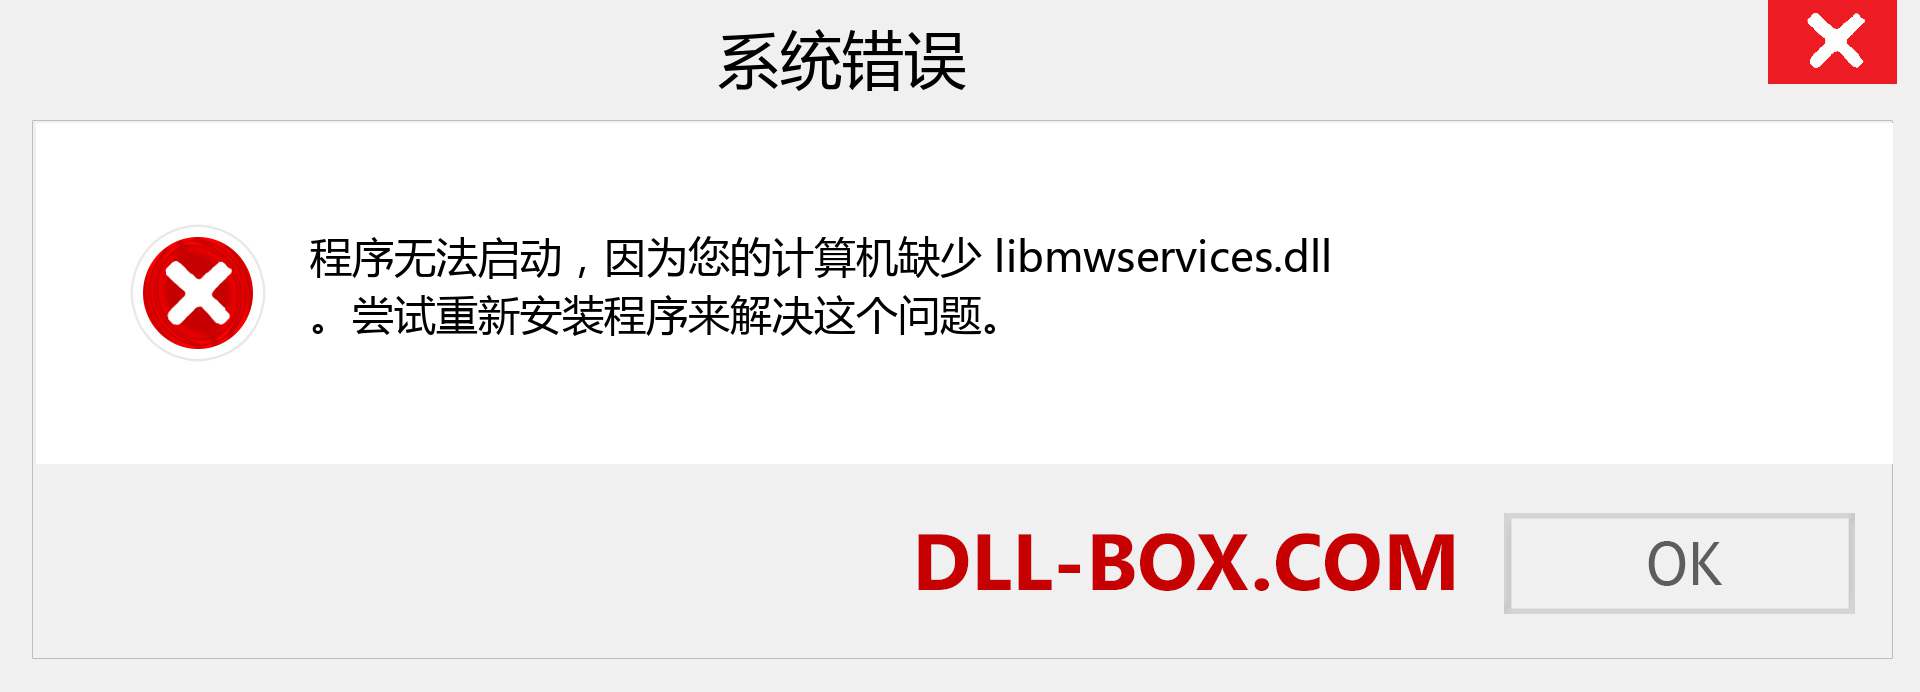 libmwservices.dll 文件丢失？。 适用于 Windows 7、8、10 的下载 - 修复 Windows、照片、图像上的 libmwservices dll 丢失错误